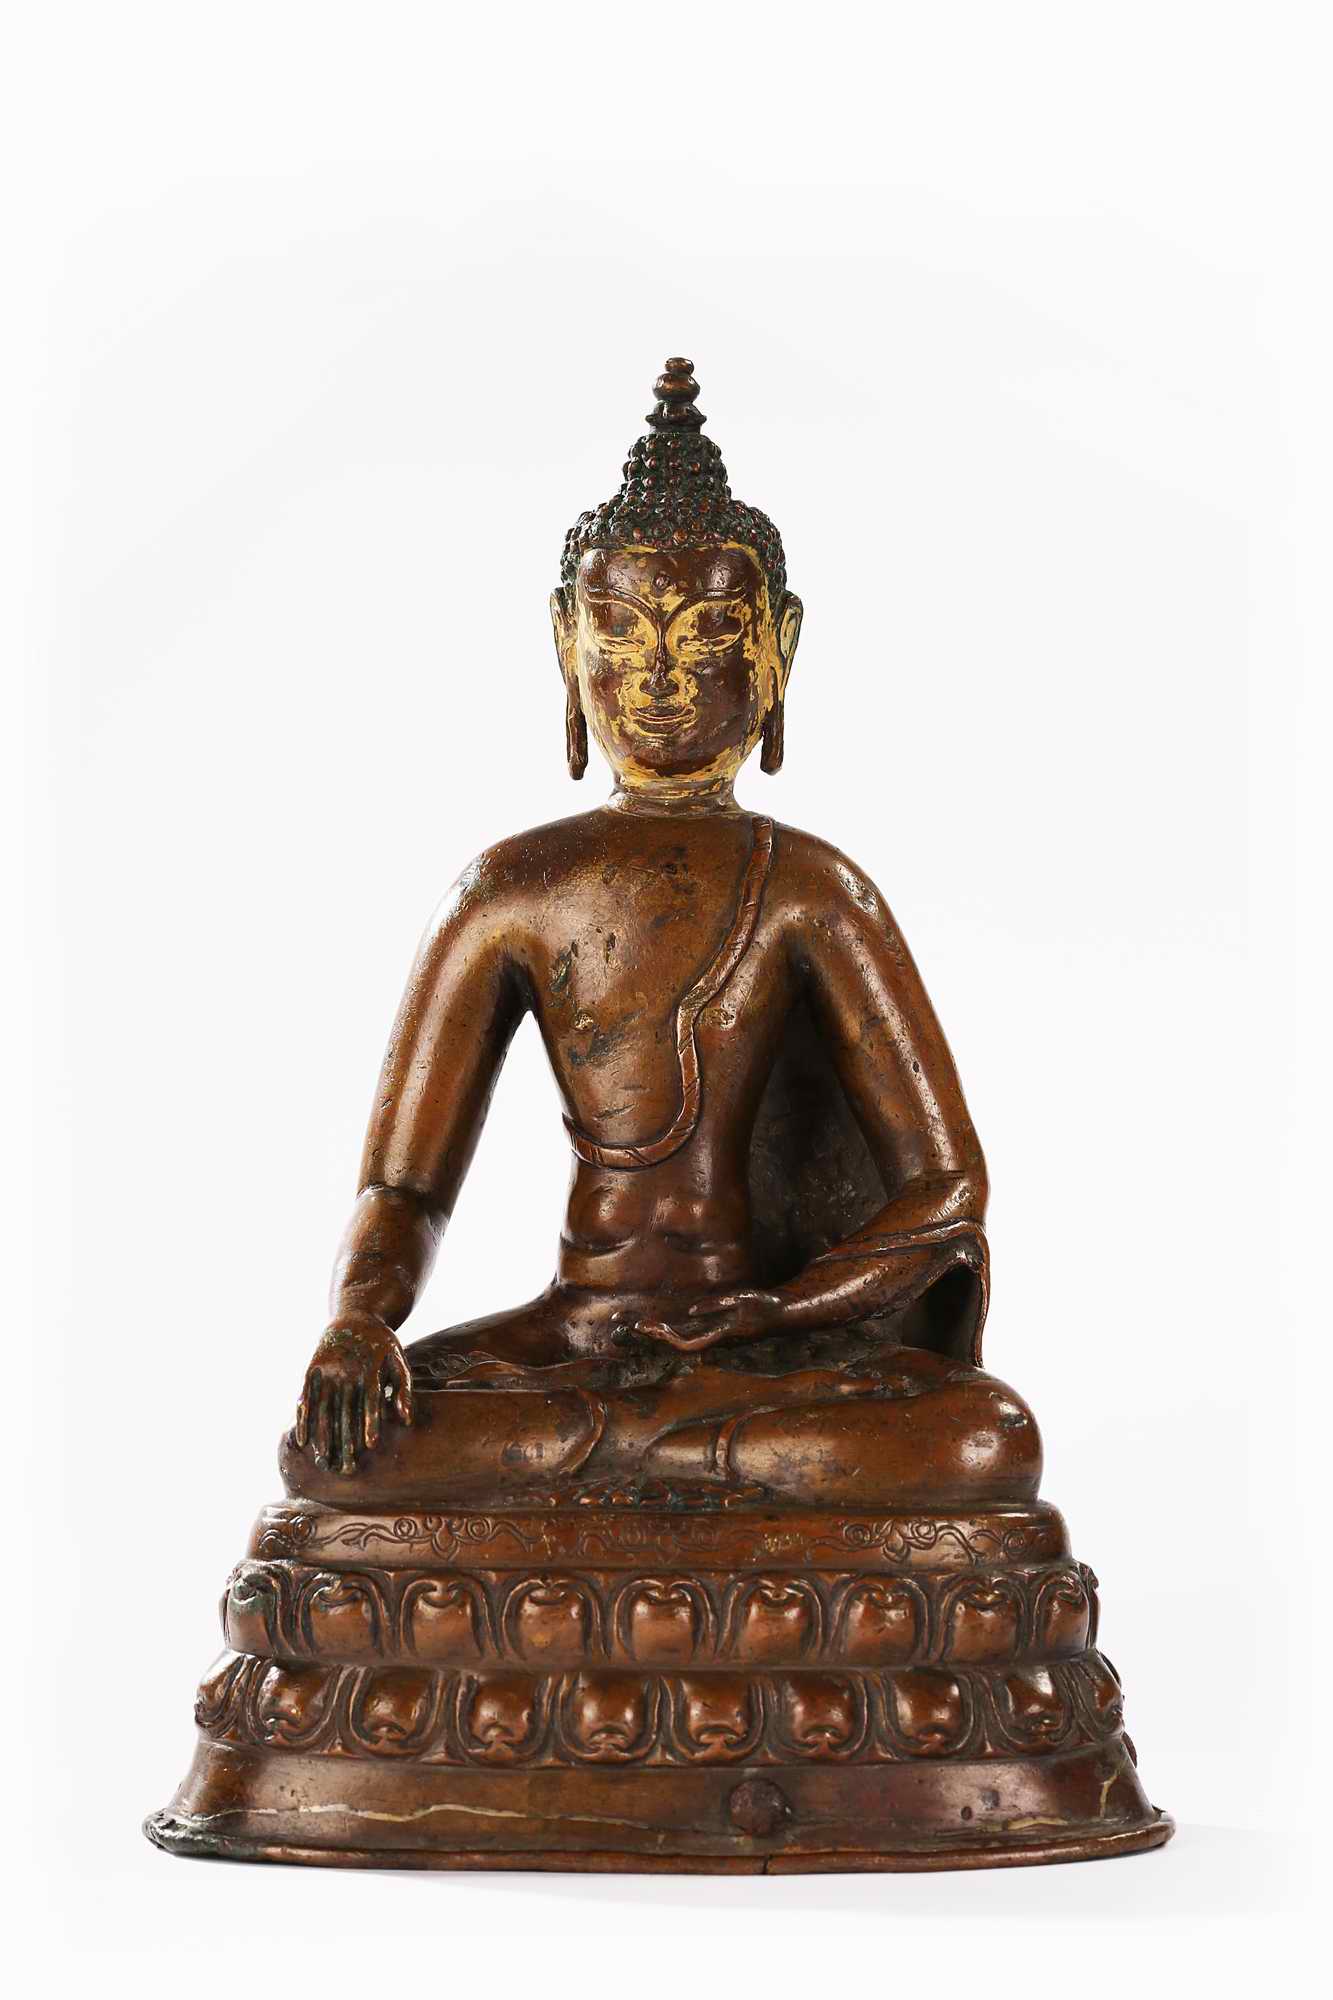 装裱形式：西藏 11-12世纪释迦牟尼